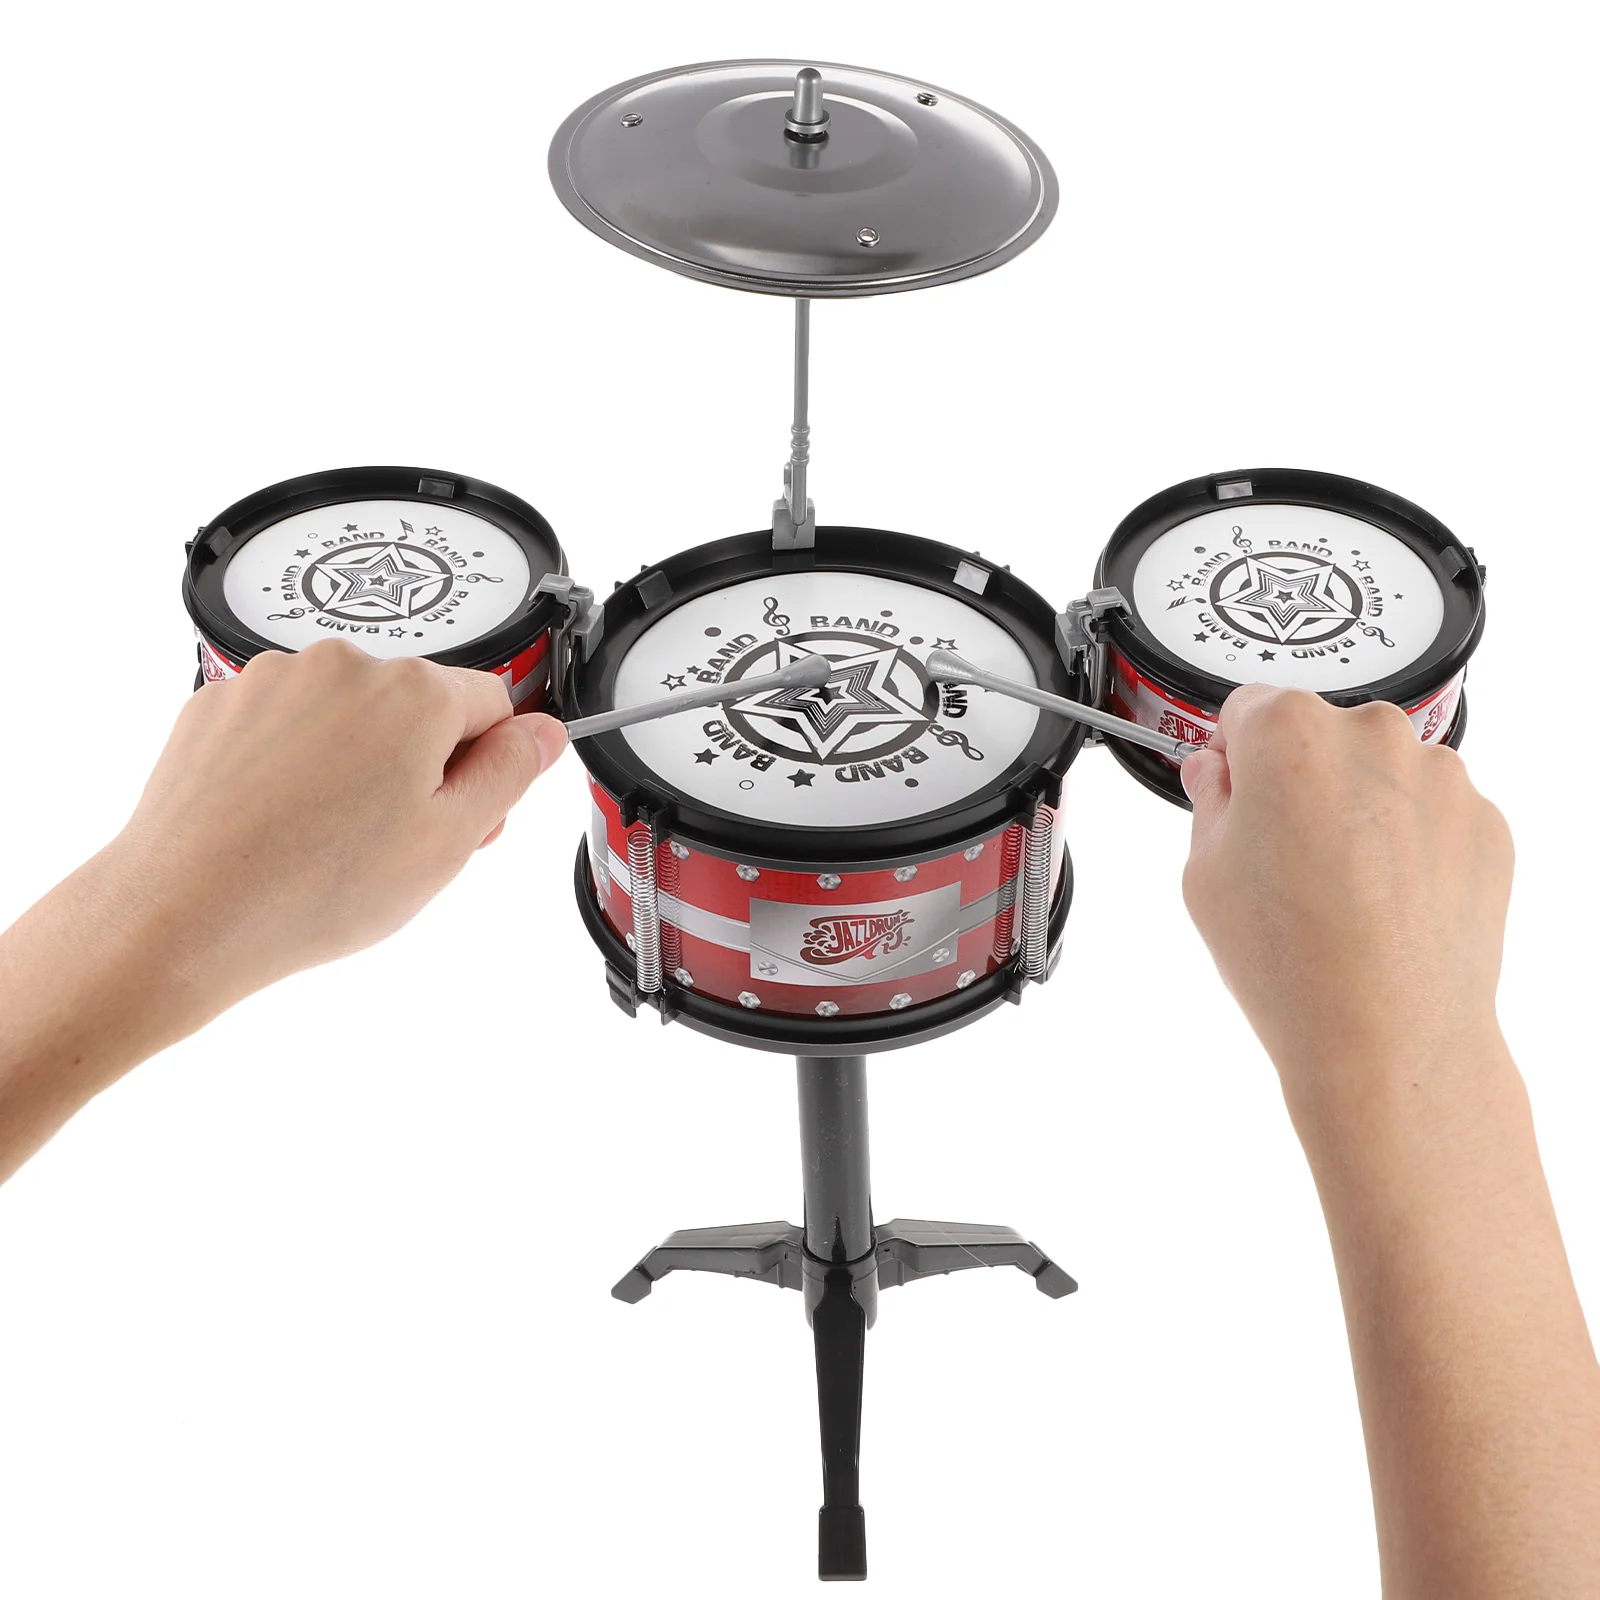 

Детский барабанный набор, перкуссионный инструмент: детская игра с 3 барабанами, музыкальное развитие, игральные барабаны для дошкольного дома, обучающий барабан